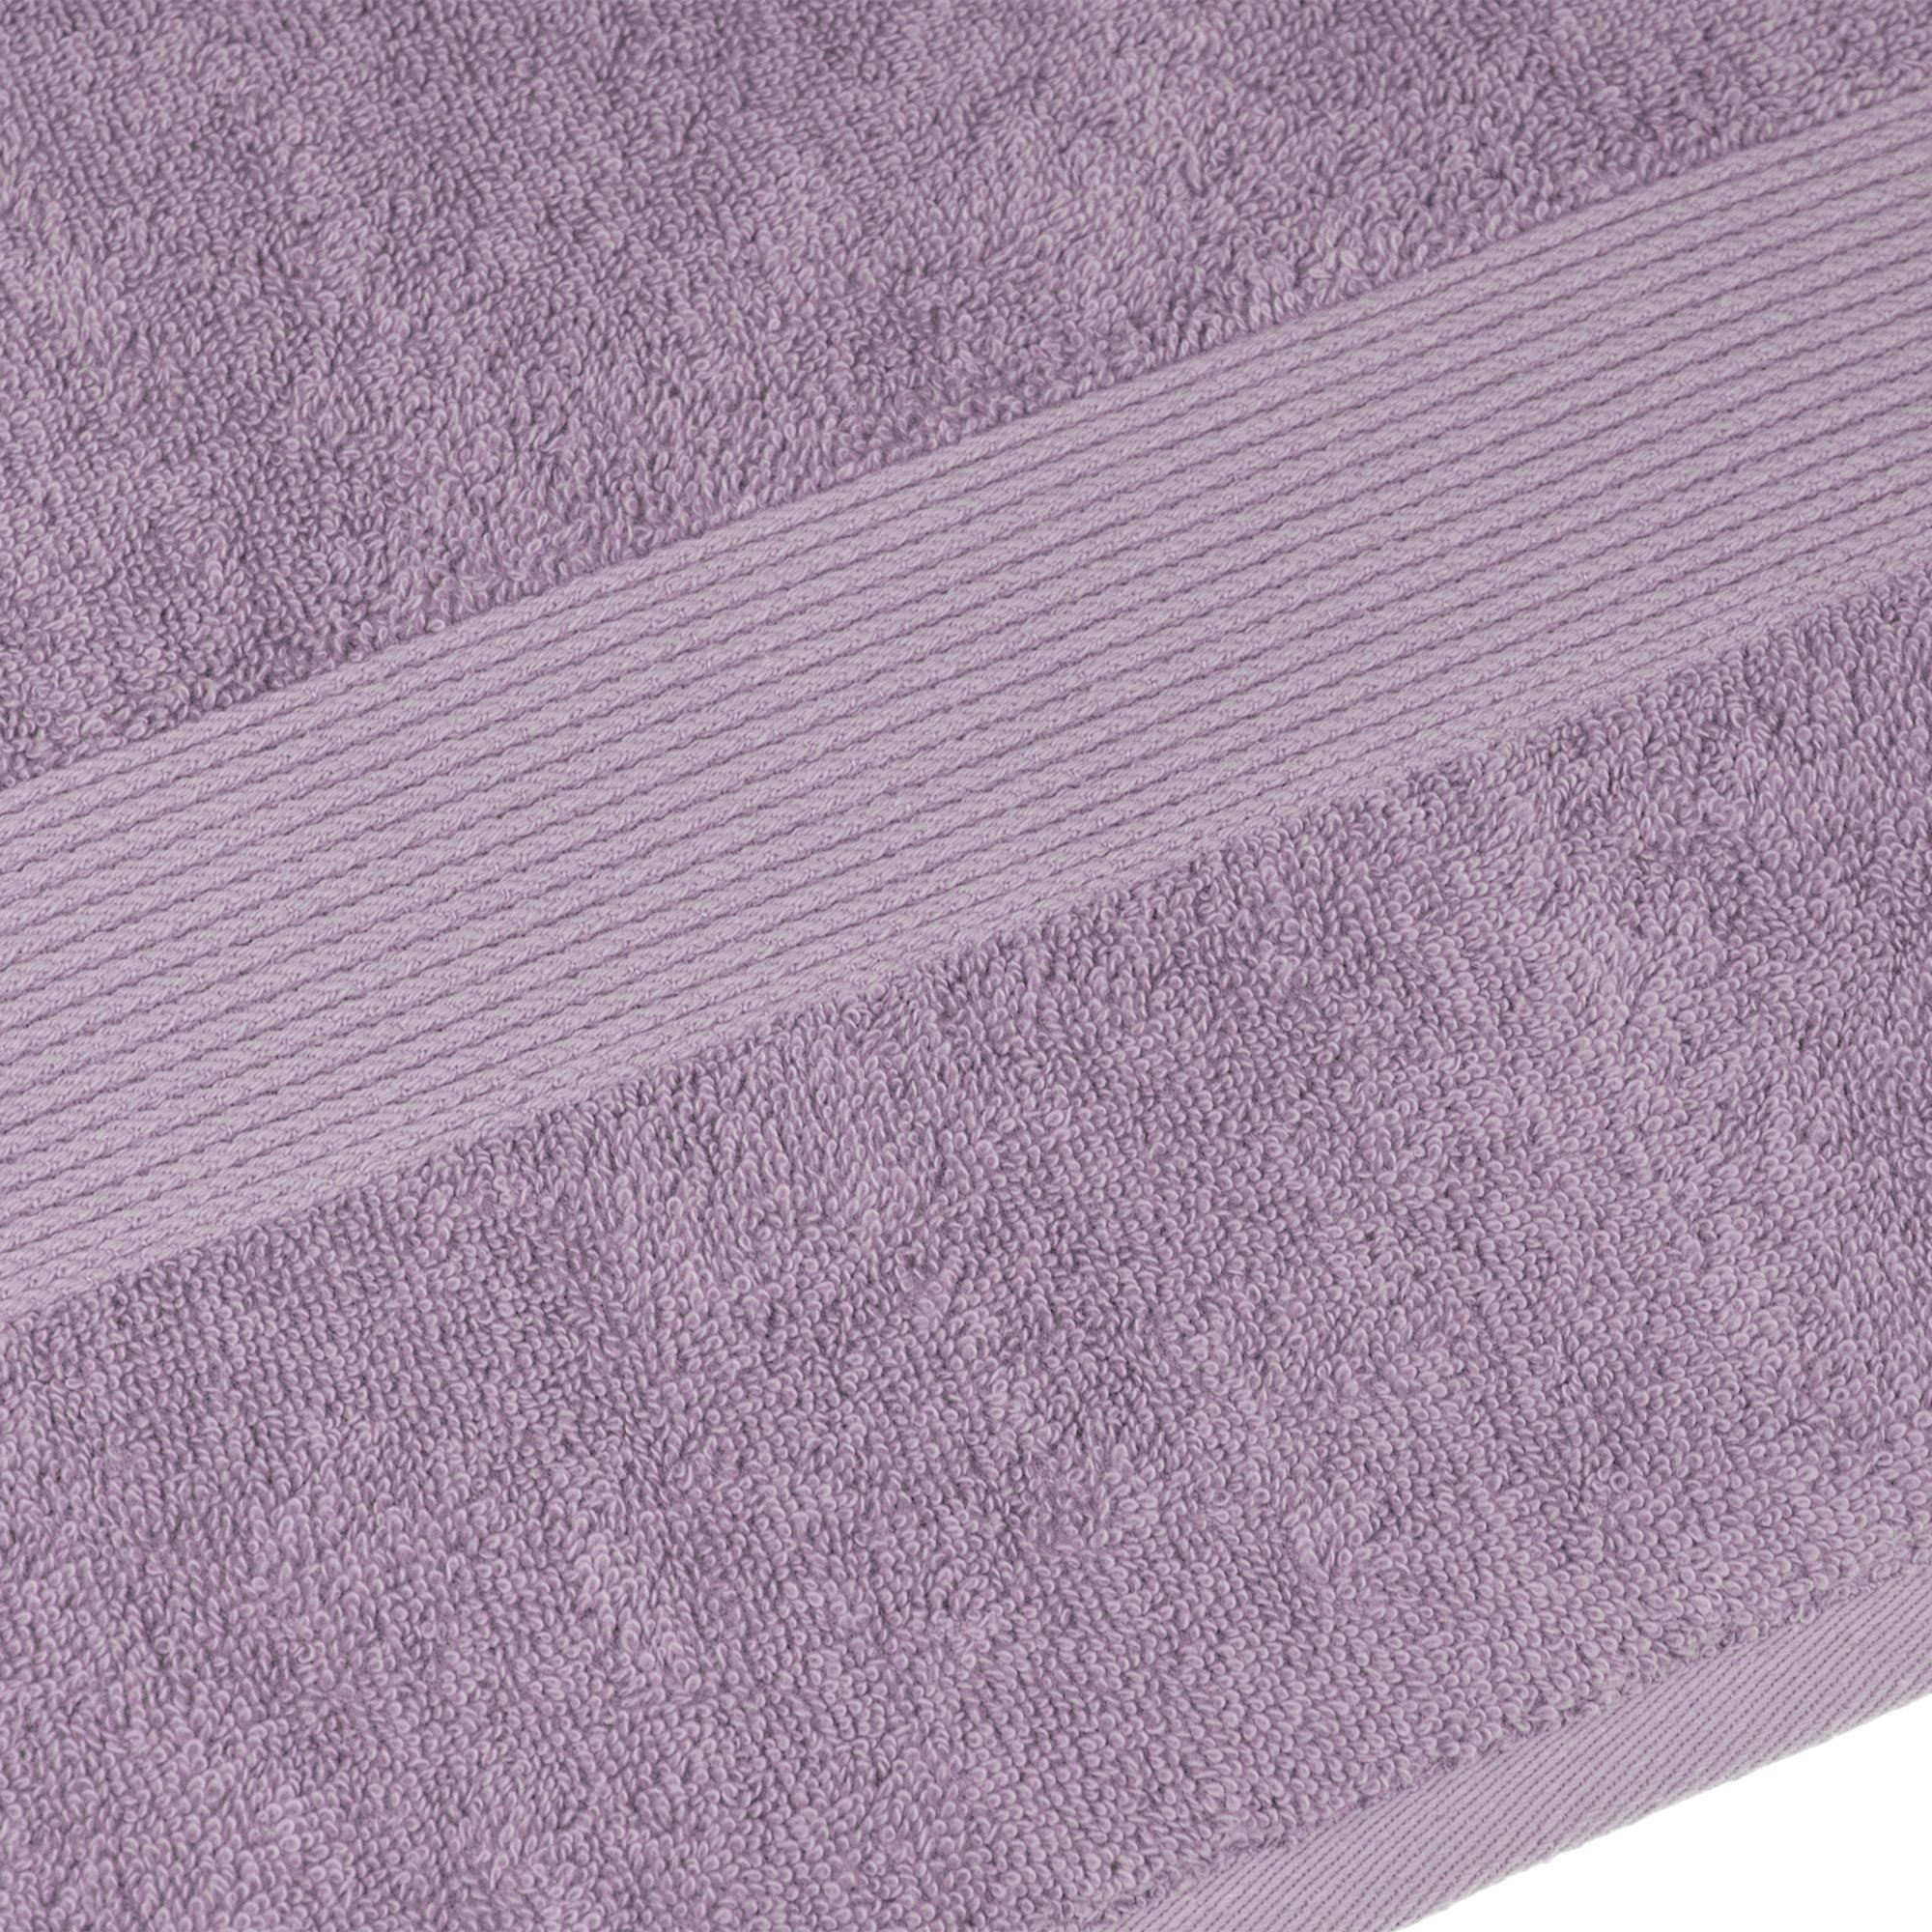 Полотенце махровое Home Line, с бордюром, 500 г/м², 140х70 см, фиолетовый (165686) - фото 2